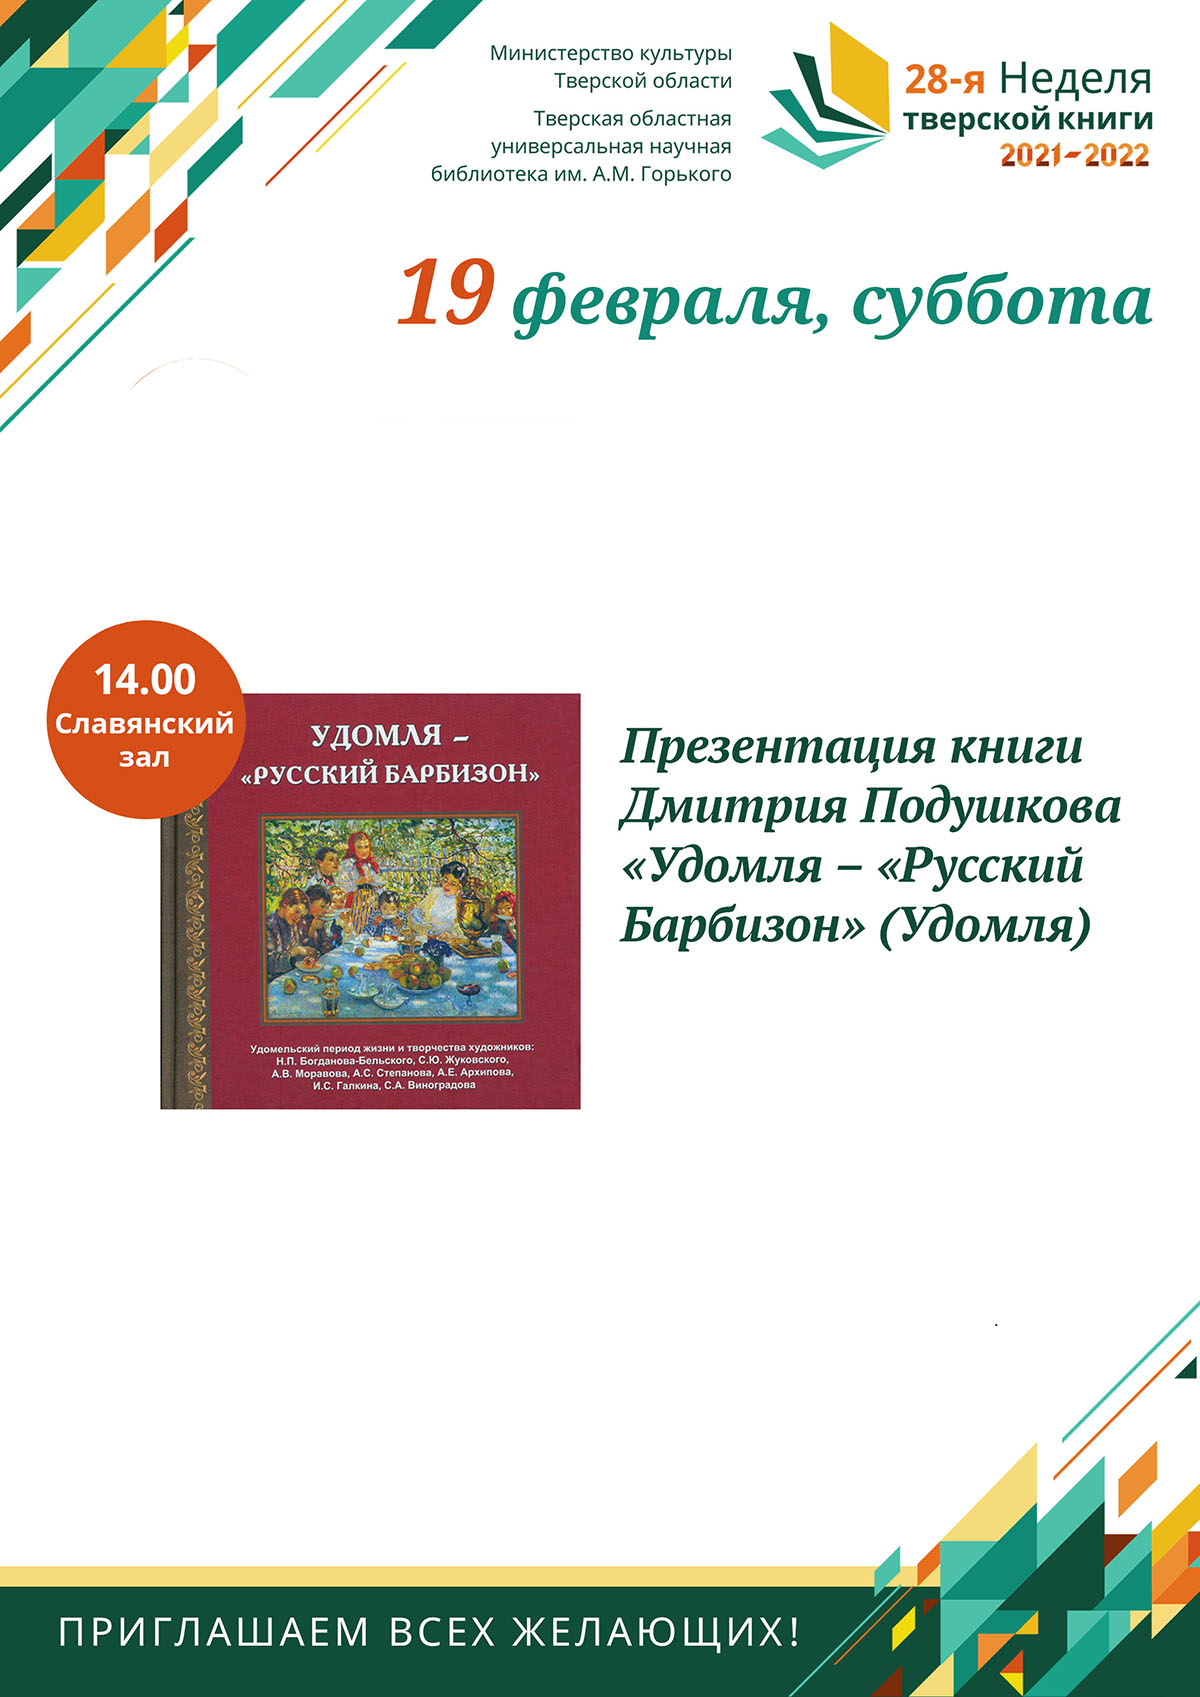 Презентация книги Дмитрия Подушкова «Удомля – «Русский Барбизон»